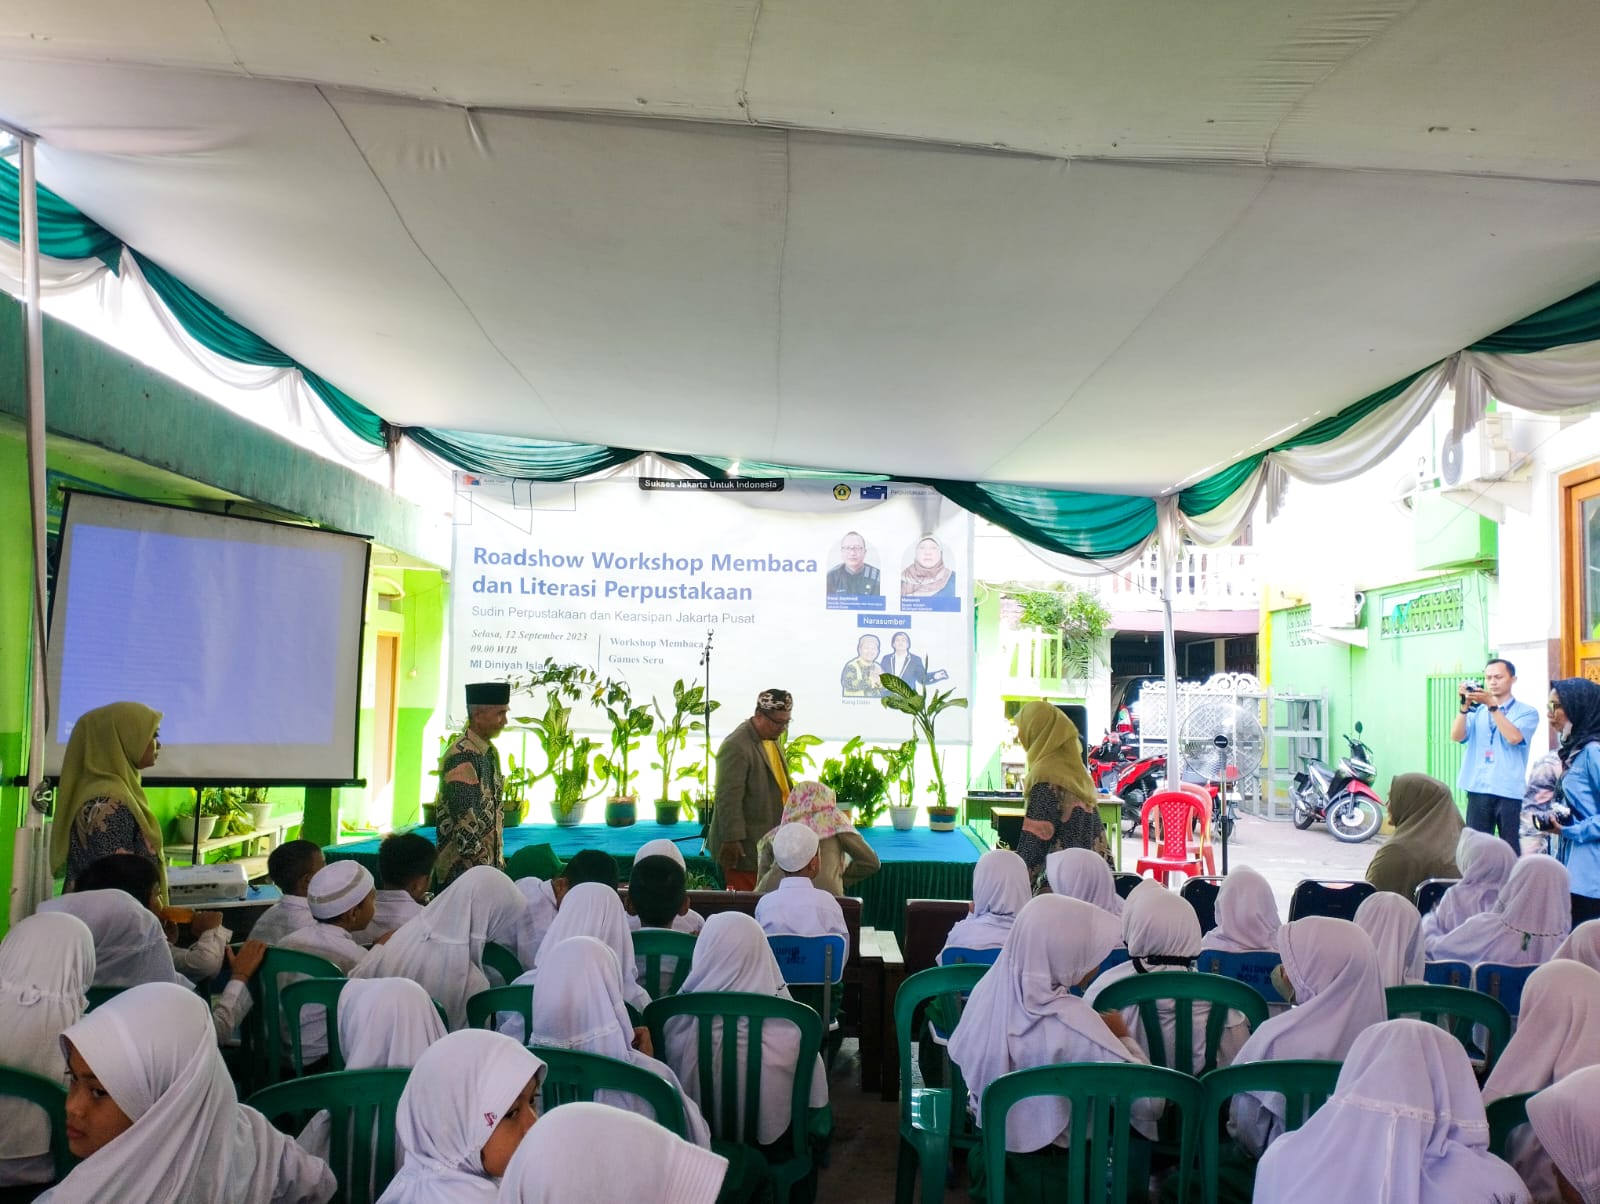 Roadshow Workshop Membaca Dan Literasi Perpustakaan Sudin Pusip Jakarta Pusat Di MI Diniyah Islamiyah